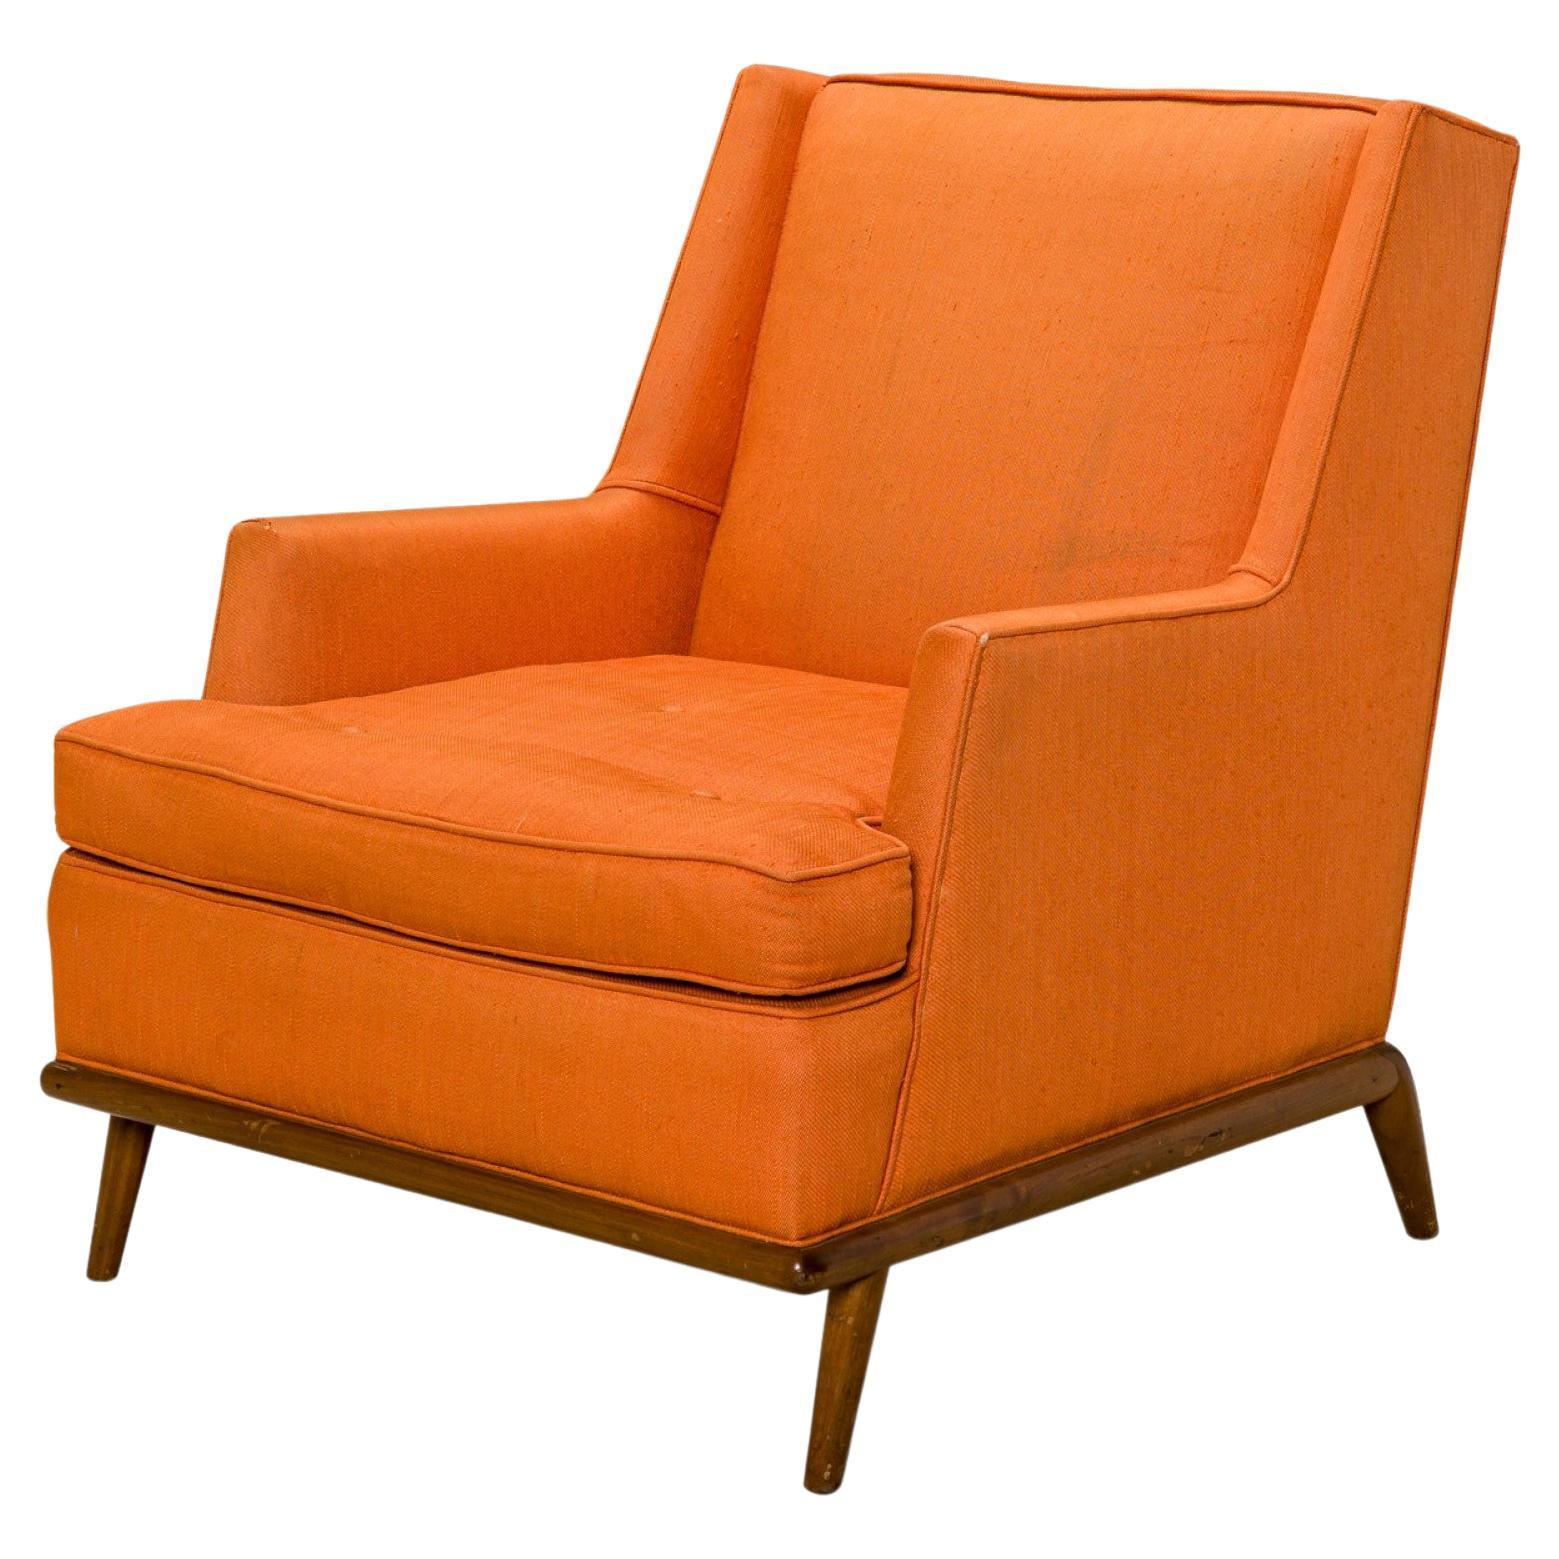 T.H. Robsjohn-Gibbings for Widdicomb High Back Orange Upholstered Lounge Chair For Sale